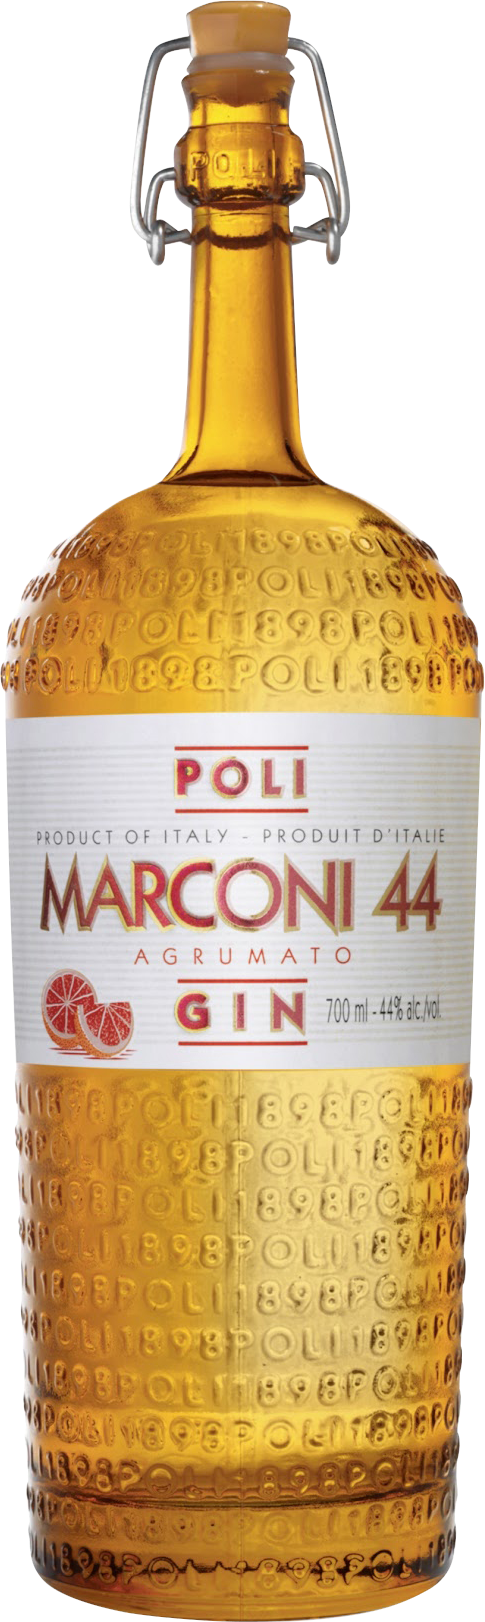 Poli Marconi 44 Gin